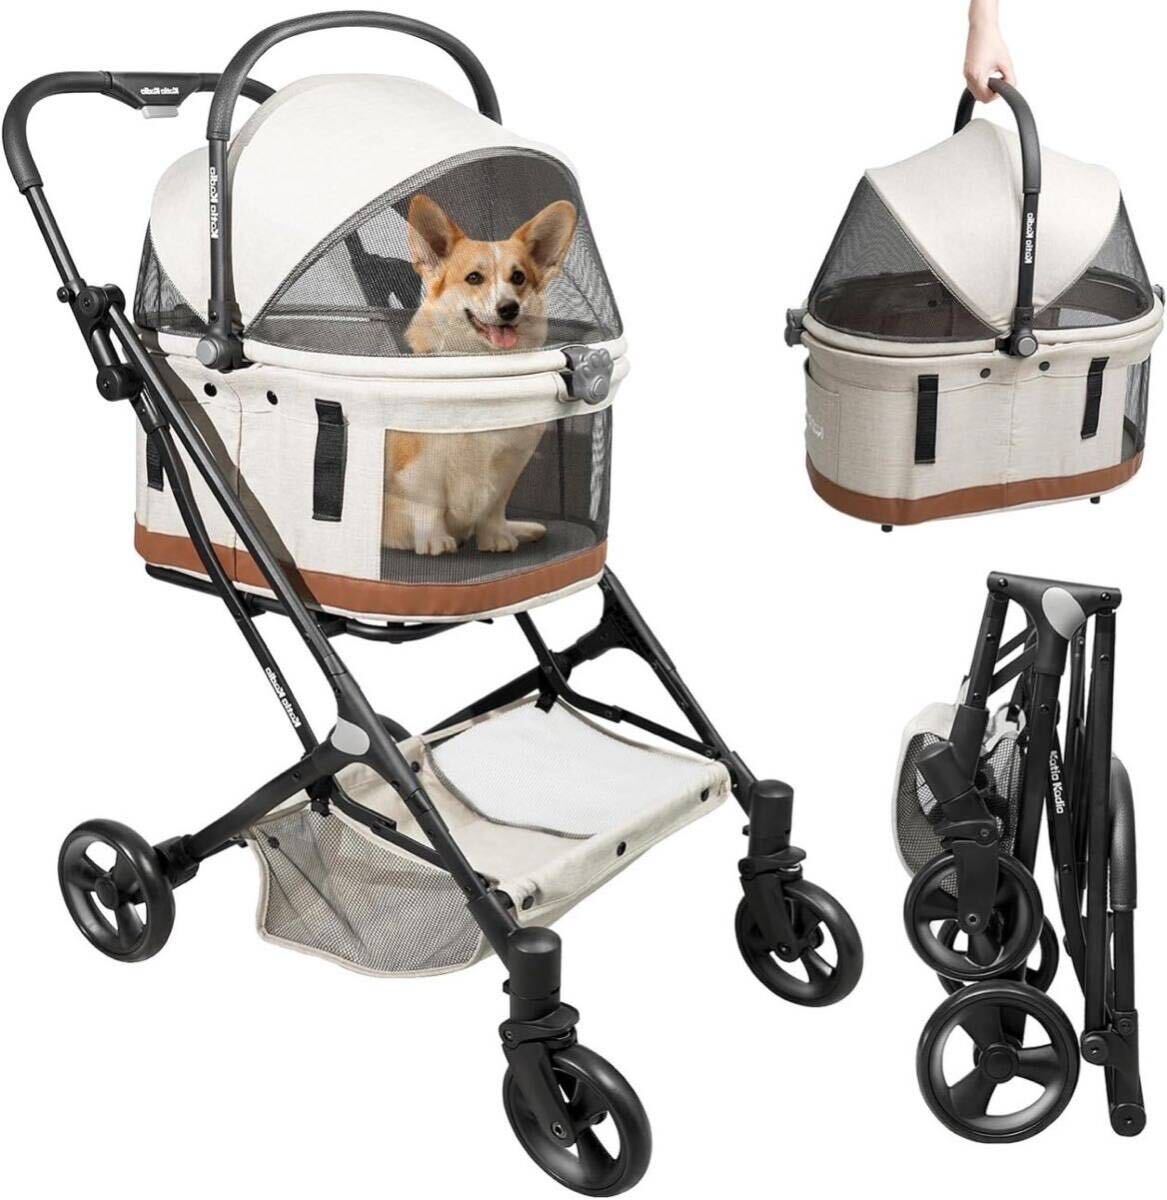  домашнее животное Cart 3way многофункциональный Buggy средний маленький размер собака модный складной разъемная модель 5